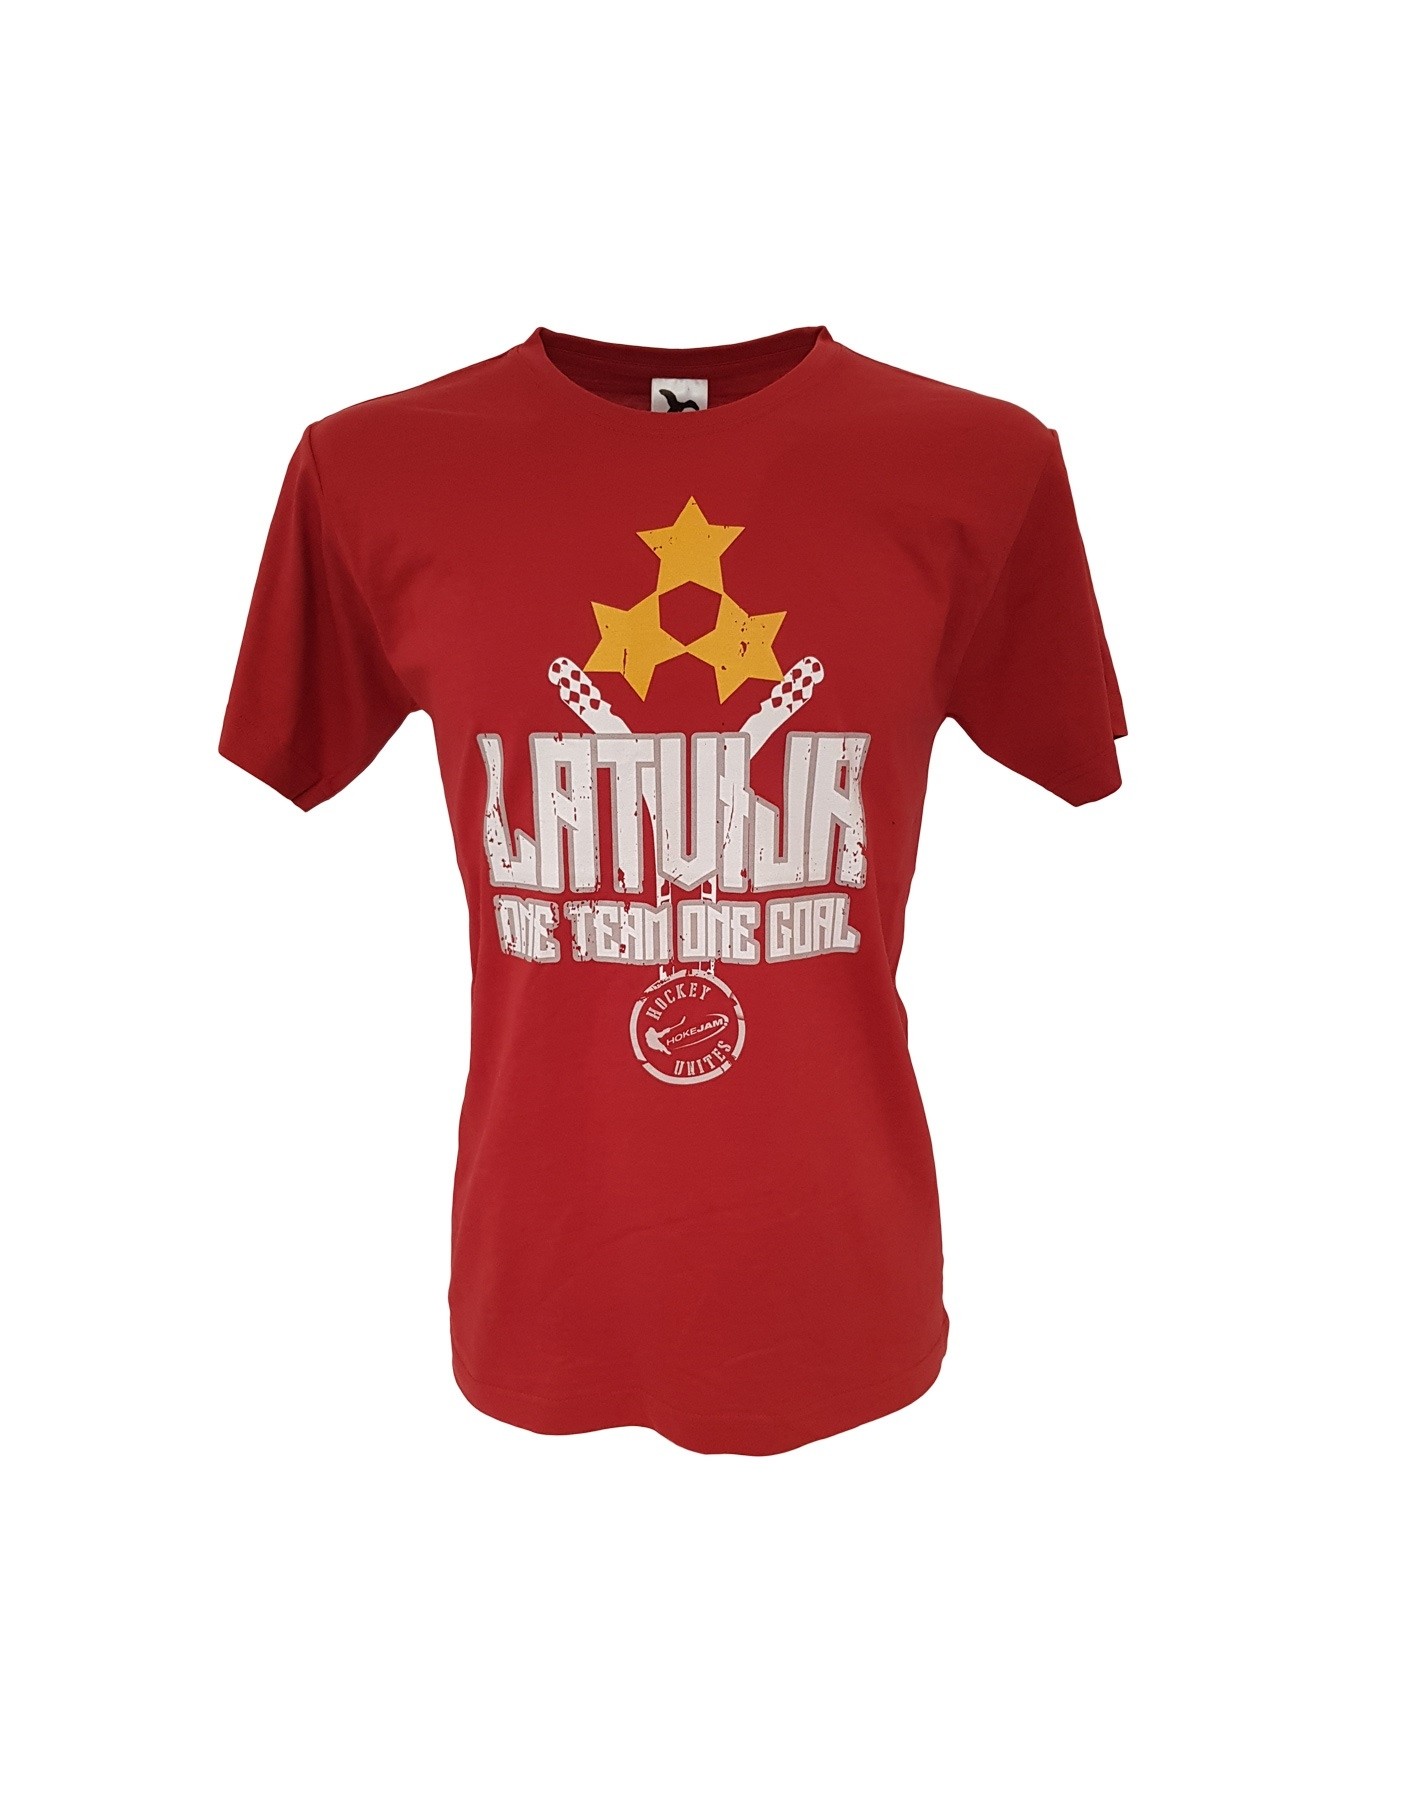 HOKEJAM Latvija One Team One Goal Adult T-skjorte